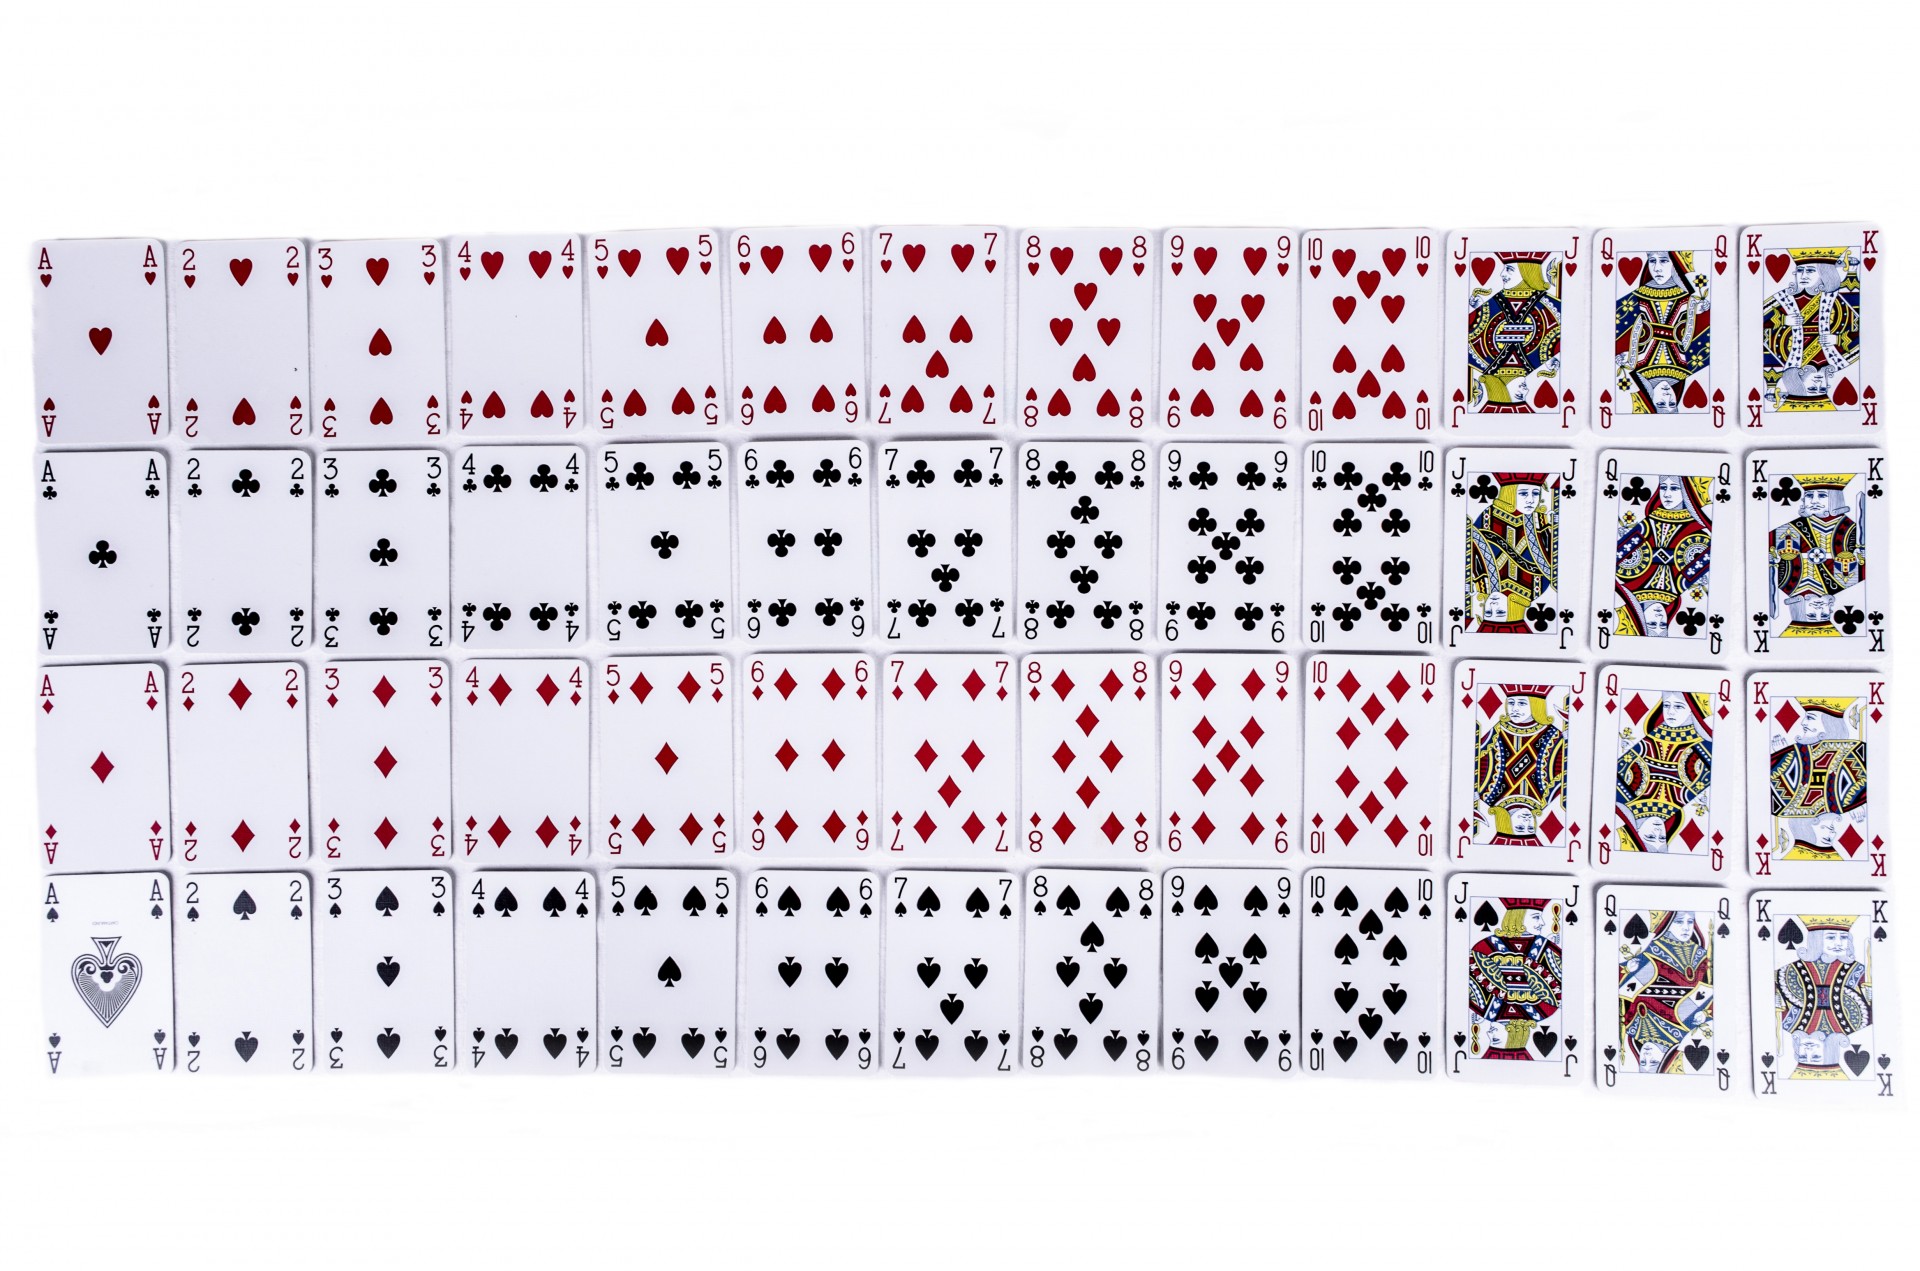 В игральной колоде 36 карт. Покер колода 52 карты. Колода в 52 карты в холдеме. Колода карт вид сбоку. Колода 54 карты состав.